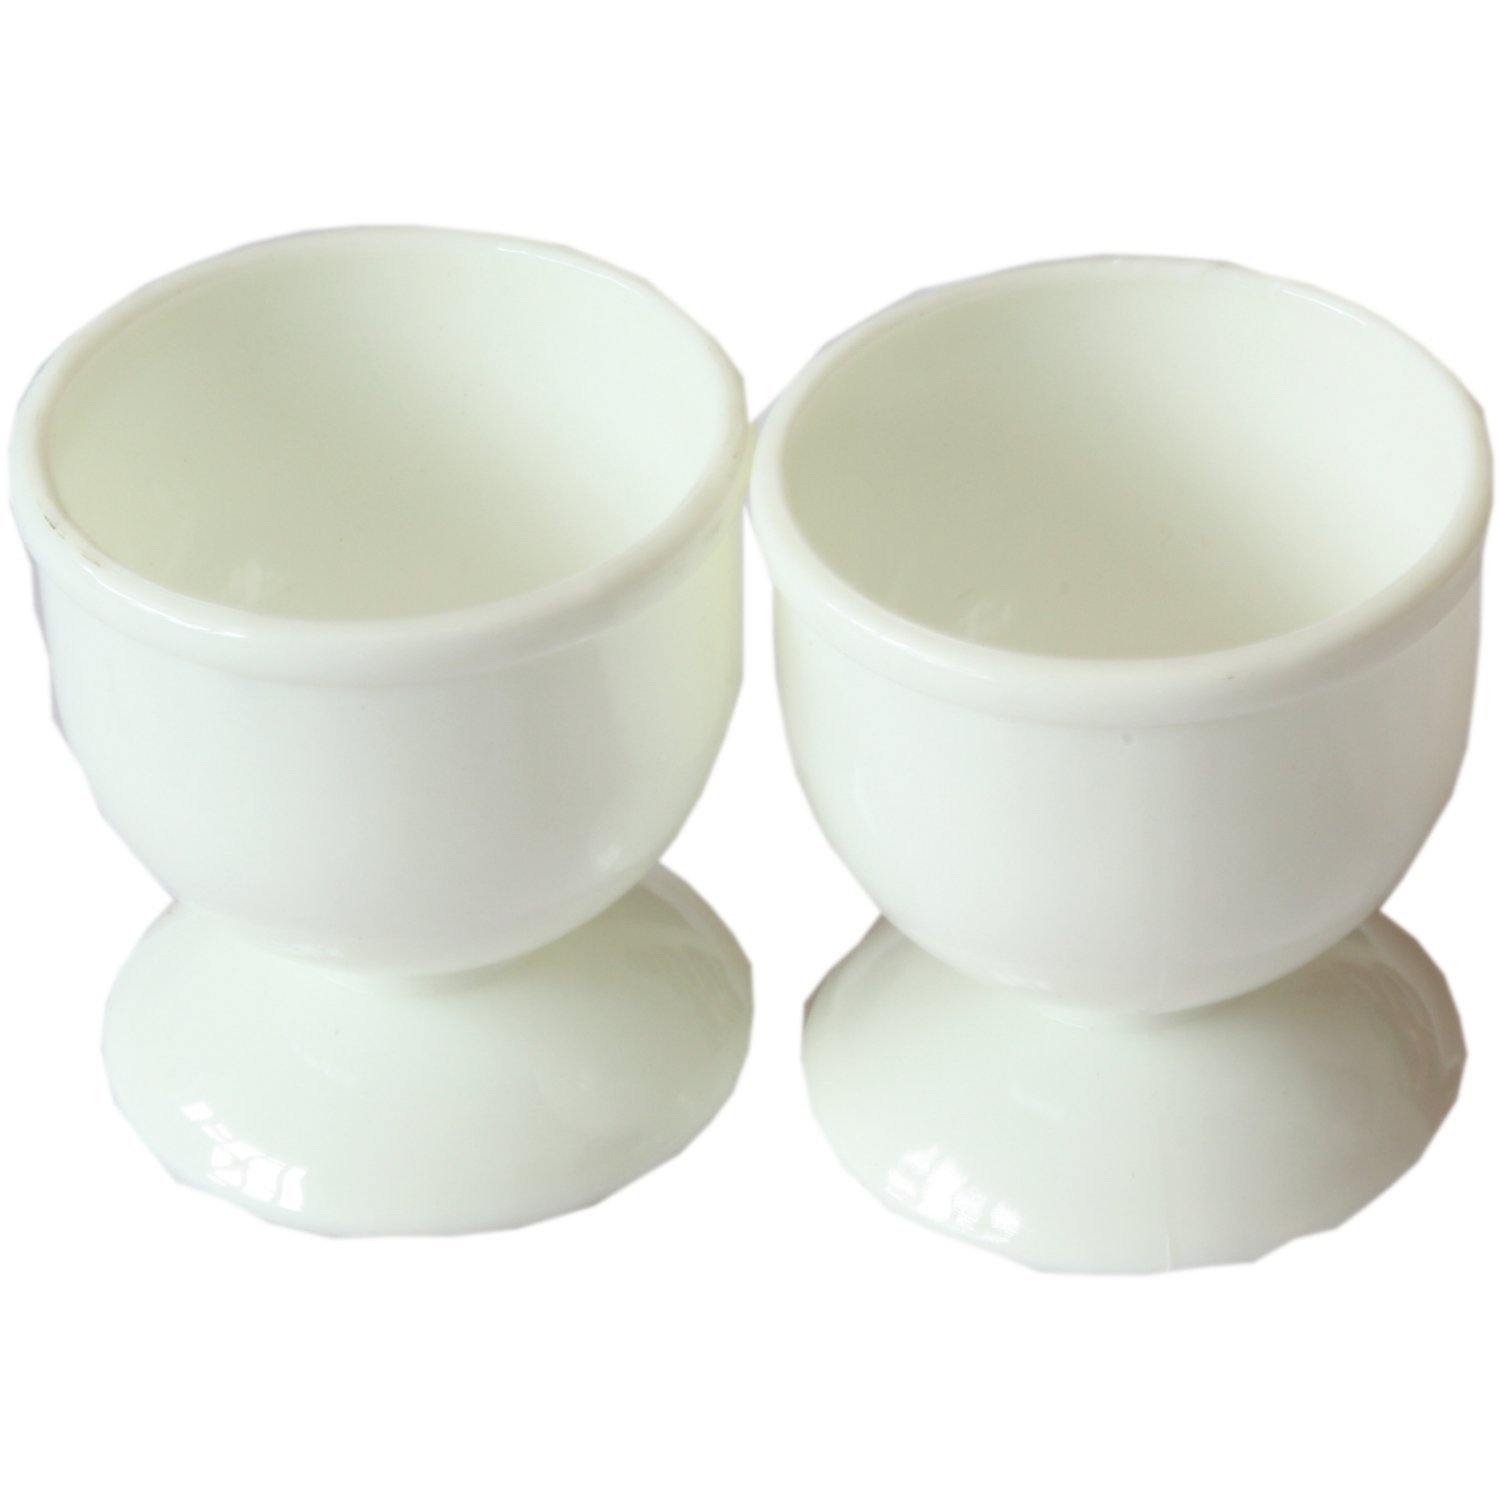 Amazon.com: 2x Plastic Egg Cups: Appliances